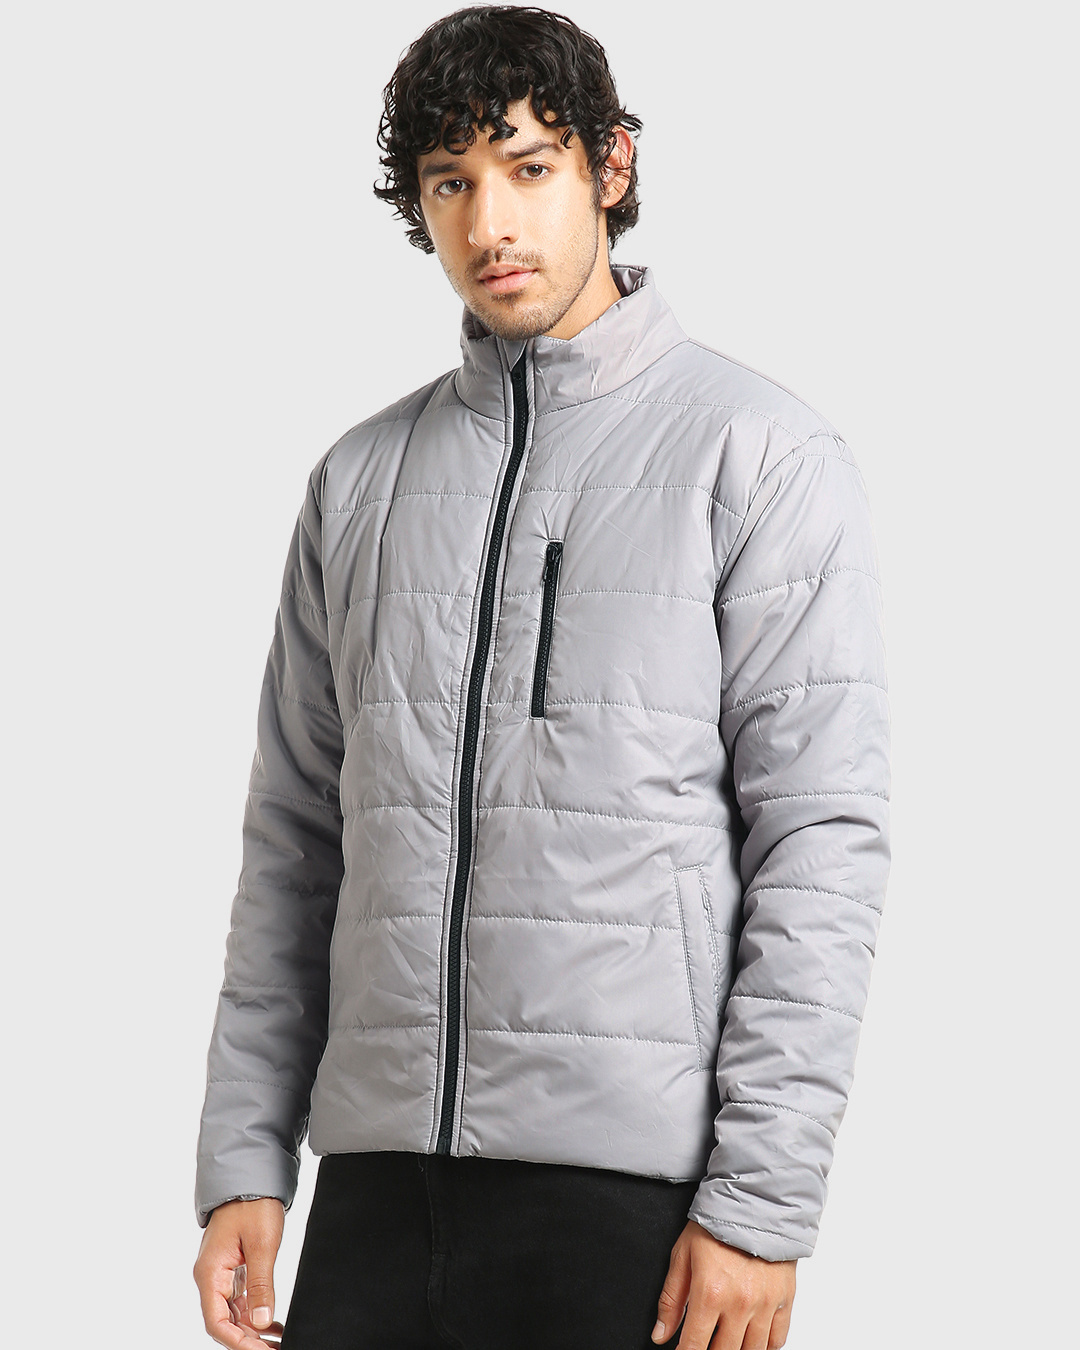 Buy Men's Light Grey Oversized Puffer Jacket Online at Bewakoof